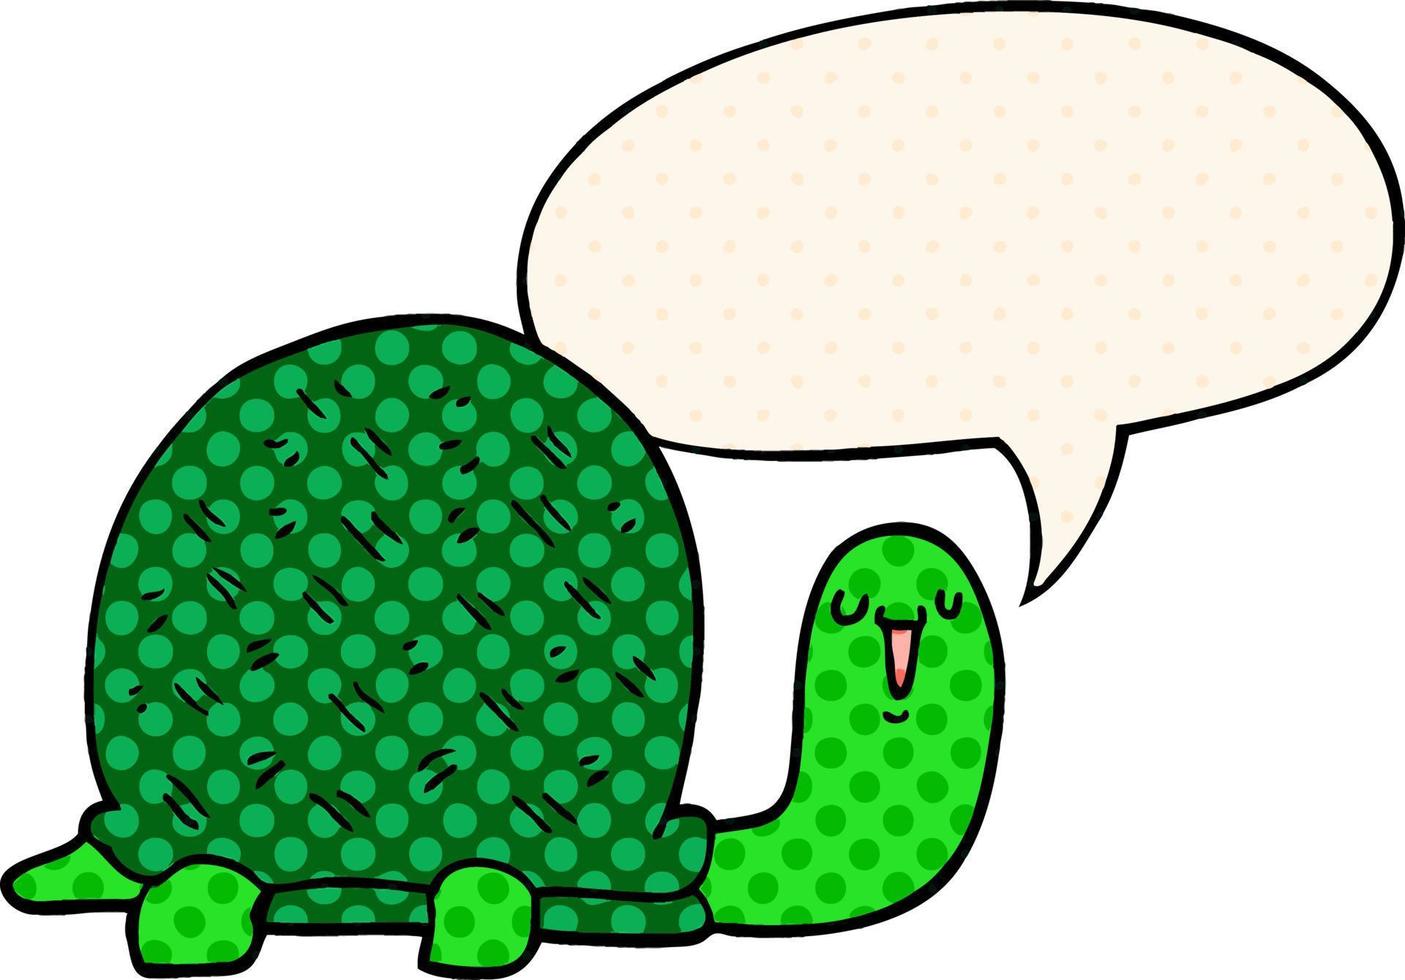 tartaruga de desenho animado bonito e bolha de fala no estilo de quadrinhos vetor